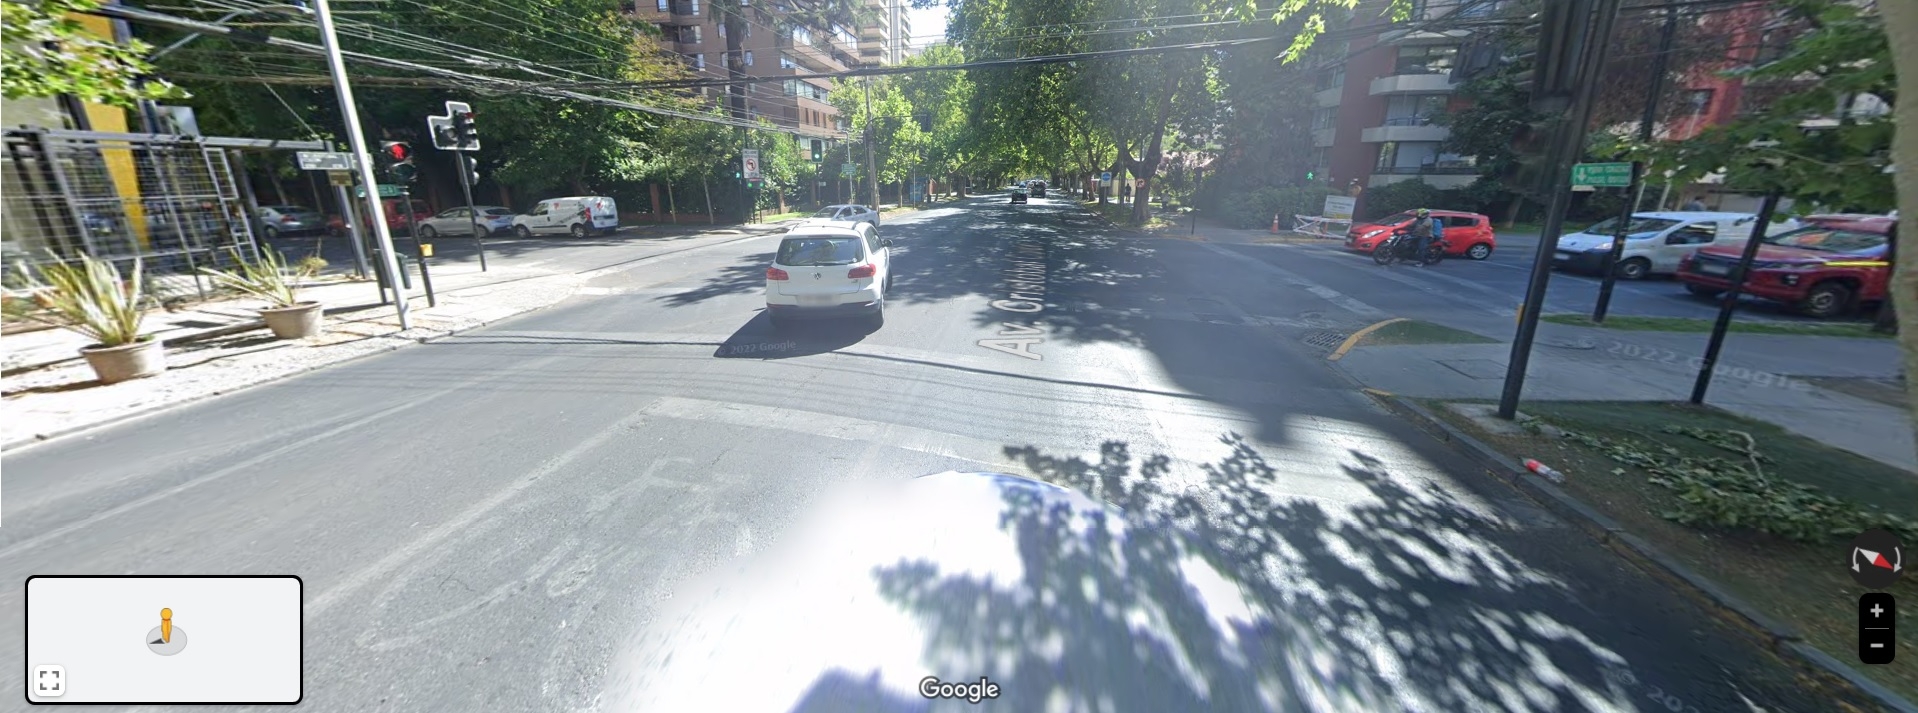 Esta fue la intersección en Las Condes donde Catalina fue atropellada en 2003 (Google Maps)